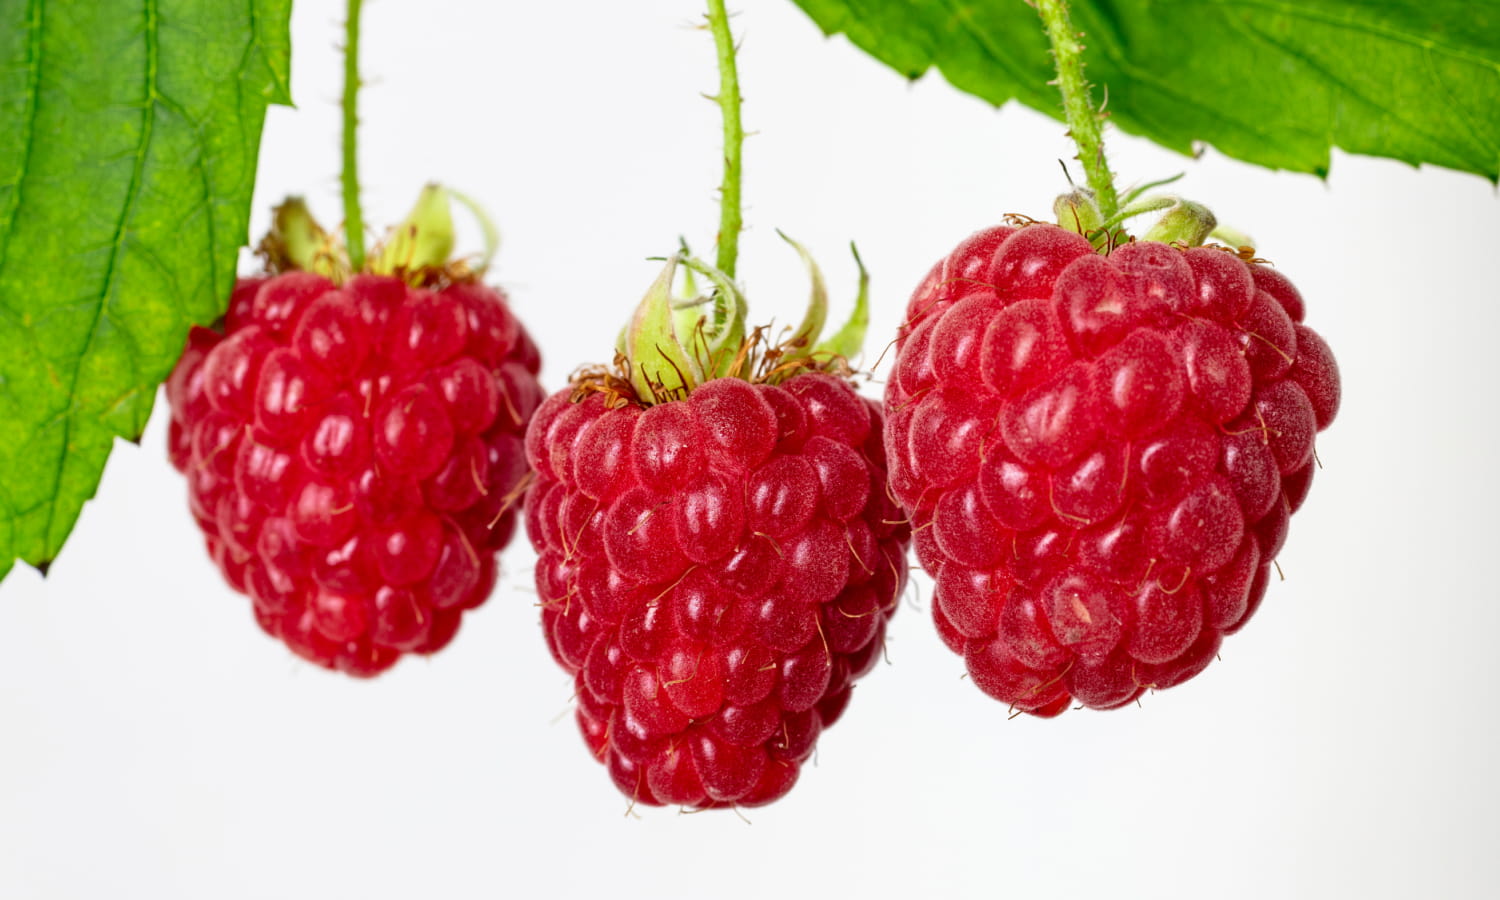 Vertically grown raspberries